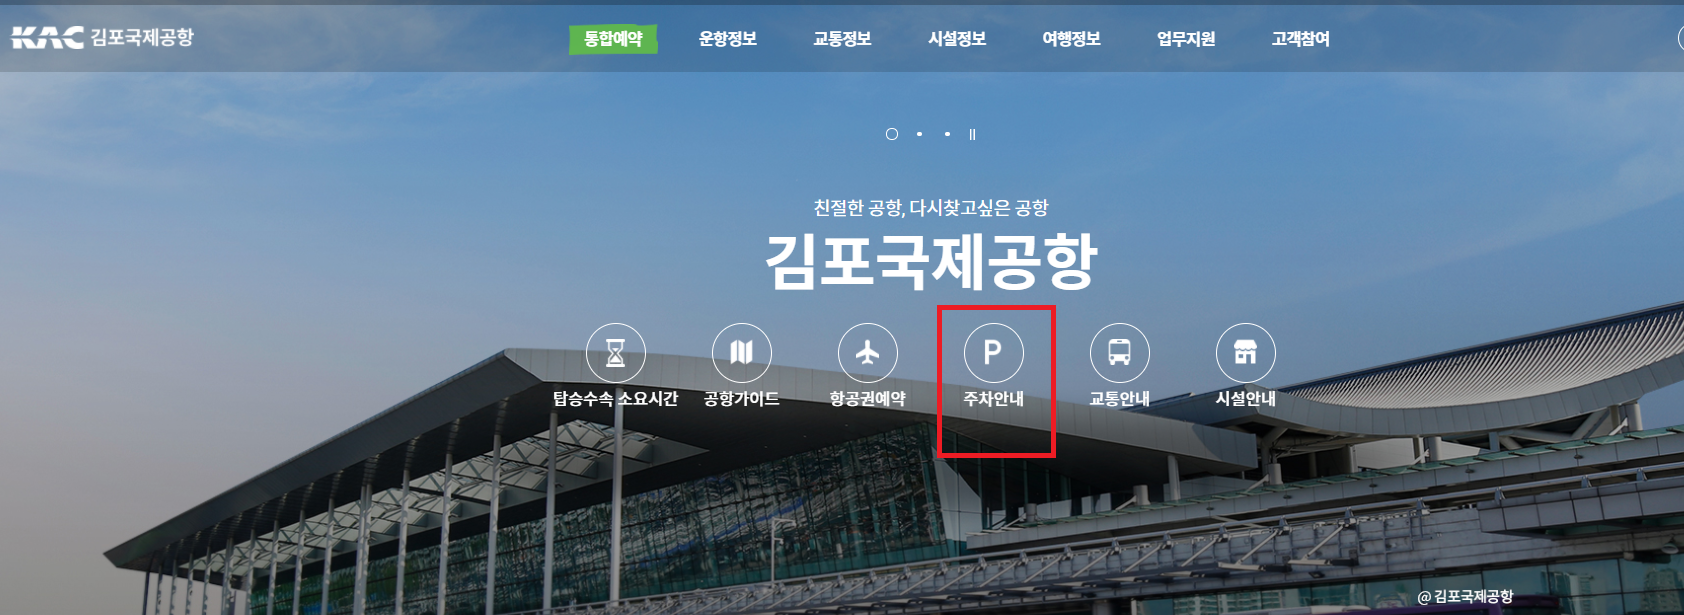 김포공항 주차요금 예상조회